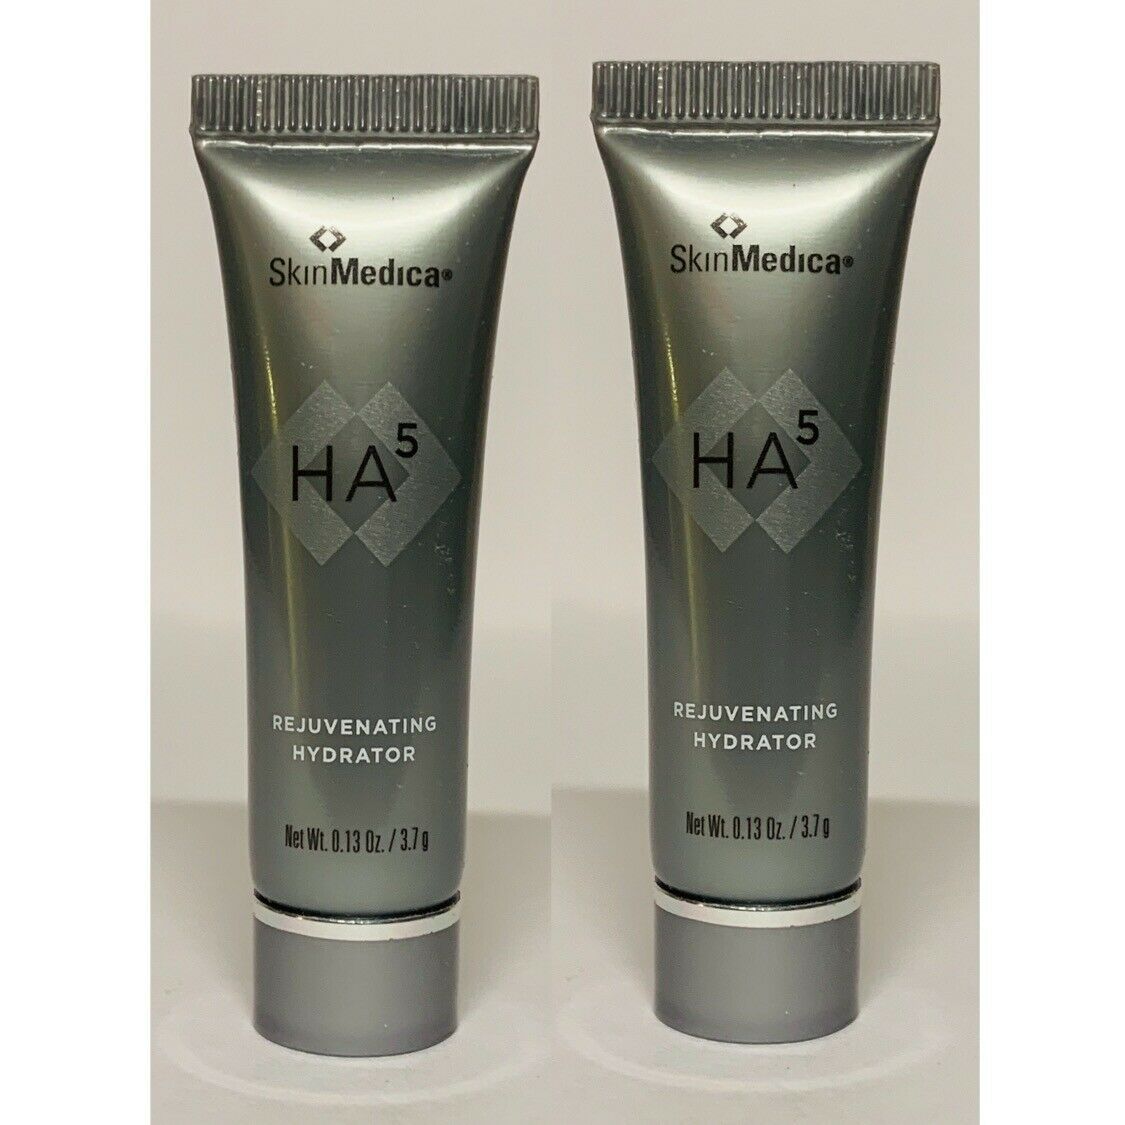 SkinMedica HA5 Rejuvenating Hydrator Sample Size 0.13oz / 3.7g / .13oz LOT OF 2 - $19.99